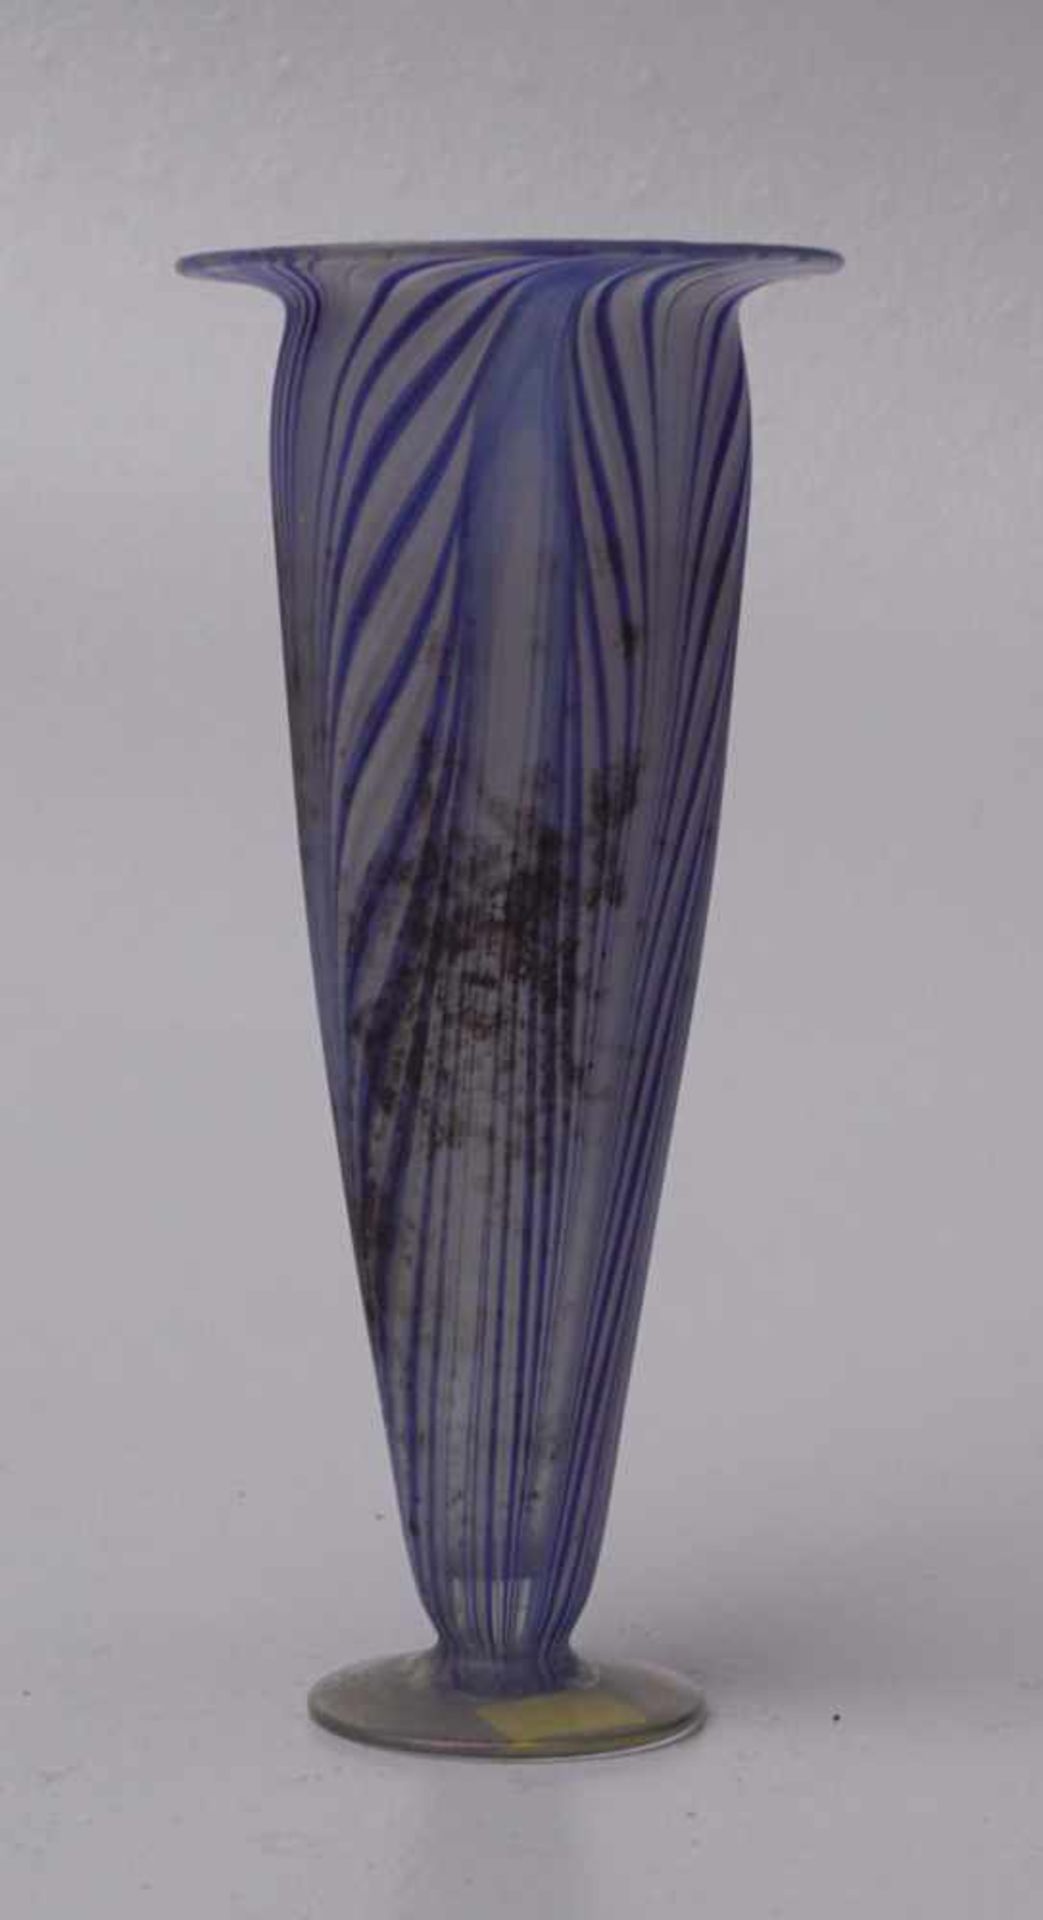 Antike Vase, Fadenglas, Italien, 18. Jhd.Farbloses Glas mit blauen, einegschmolzenen Fäden in